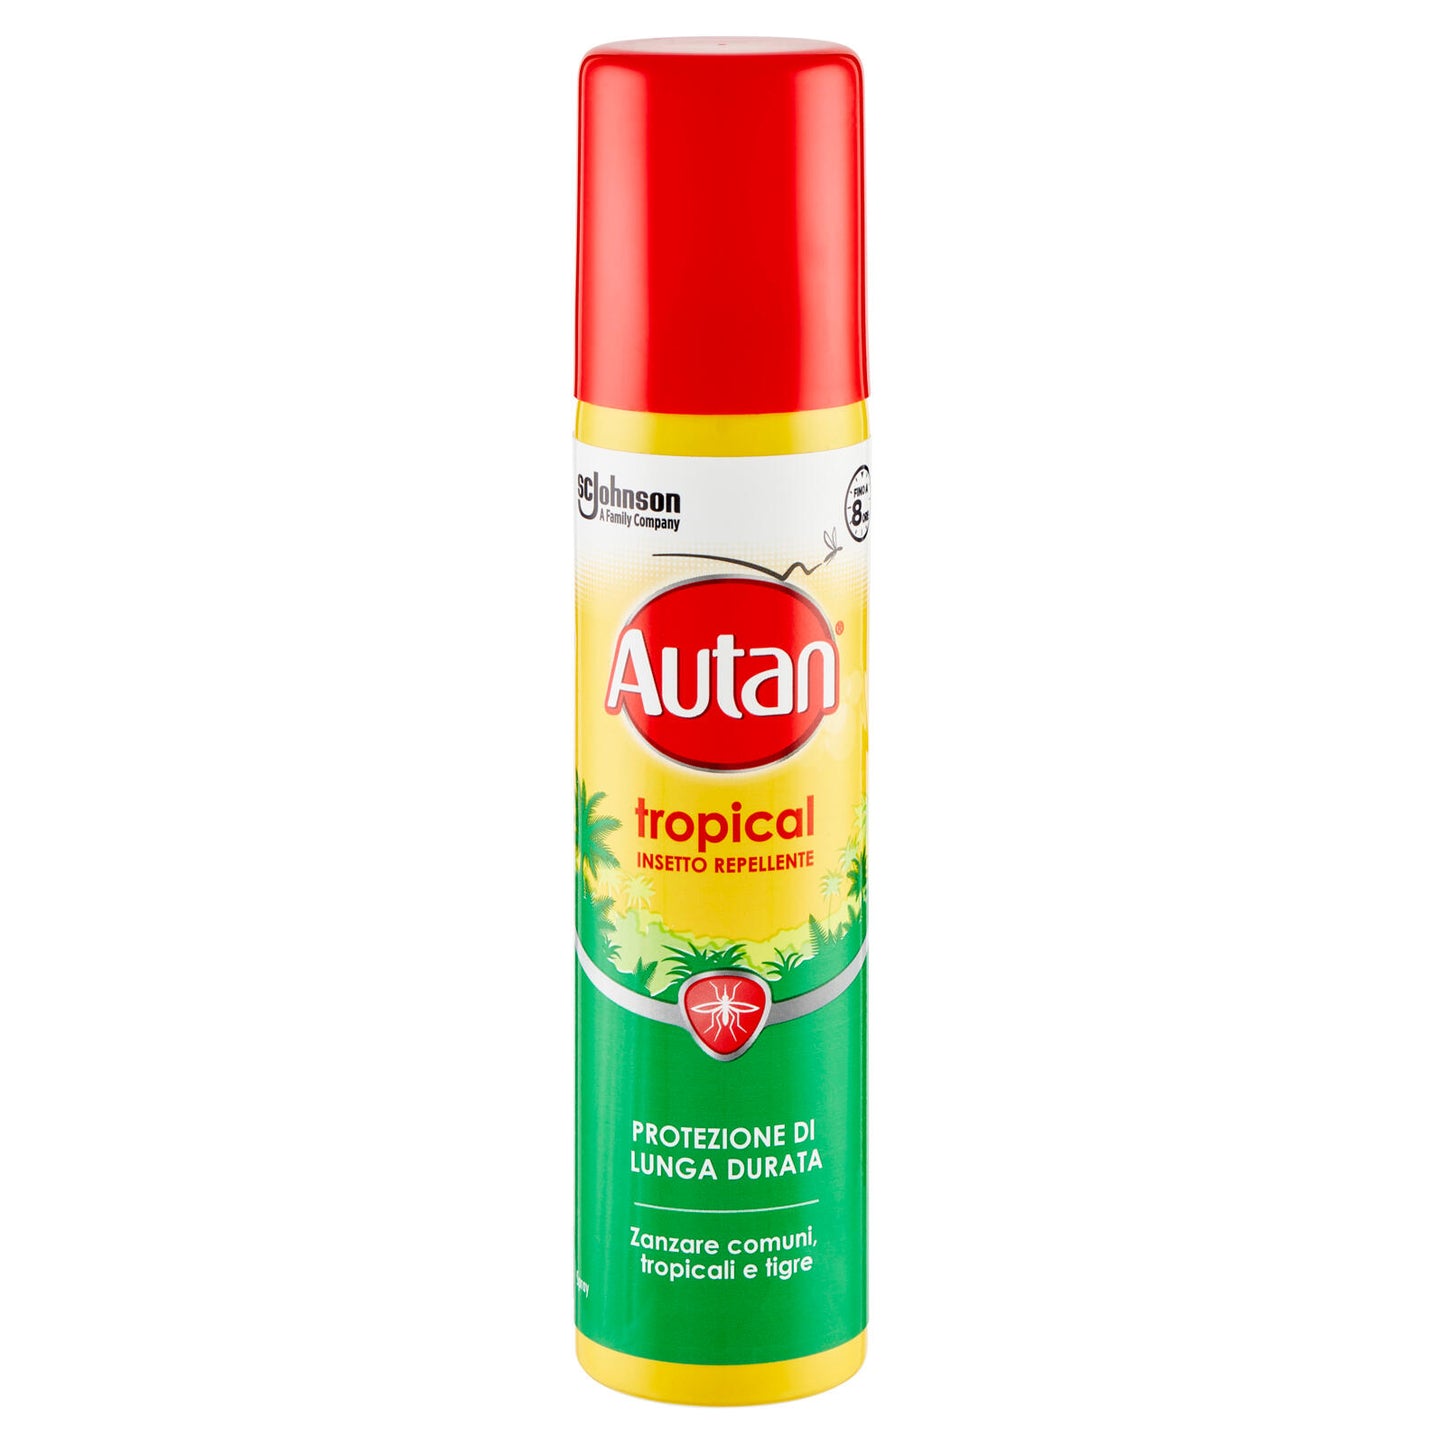 Autan Tropical Spray Insetto Repellente e Antizanzare Tigre, Comuni e Tropicali, 100ml